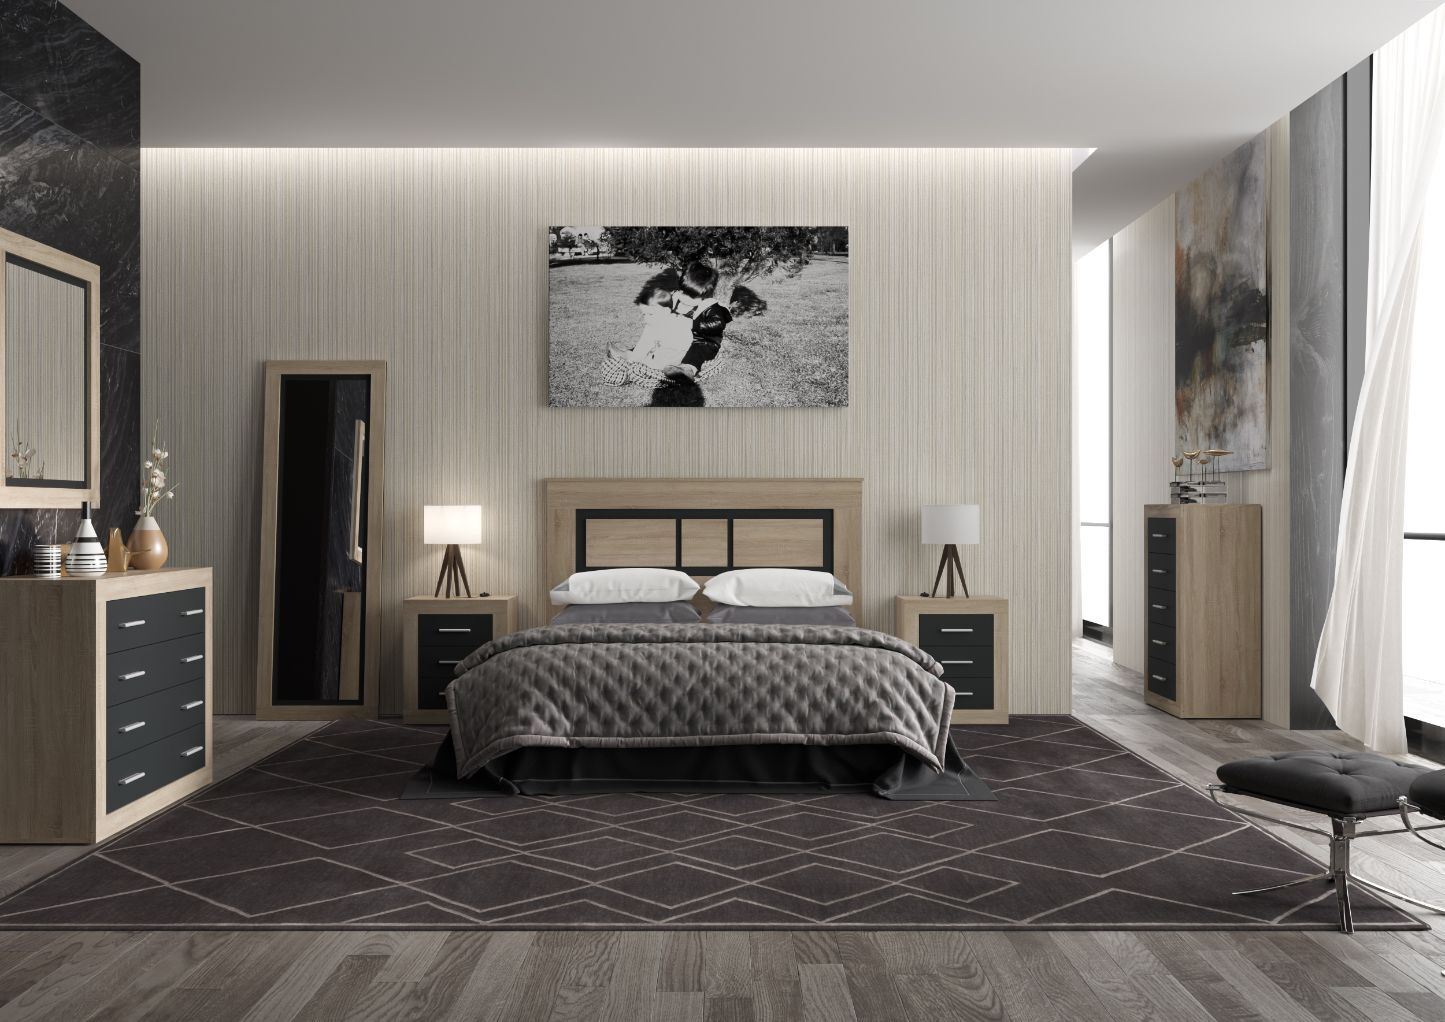 Conjunto de dormitorio moderno: cabecero, 2 mesitas, cómoda, espejo - Lara  01 - Don Baraton: tienda de sofás, colchones y muebles